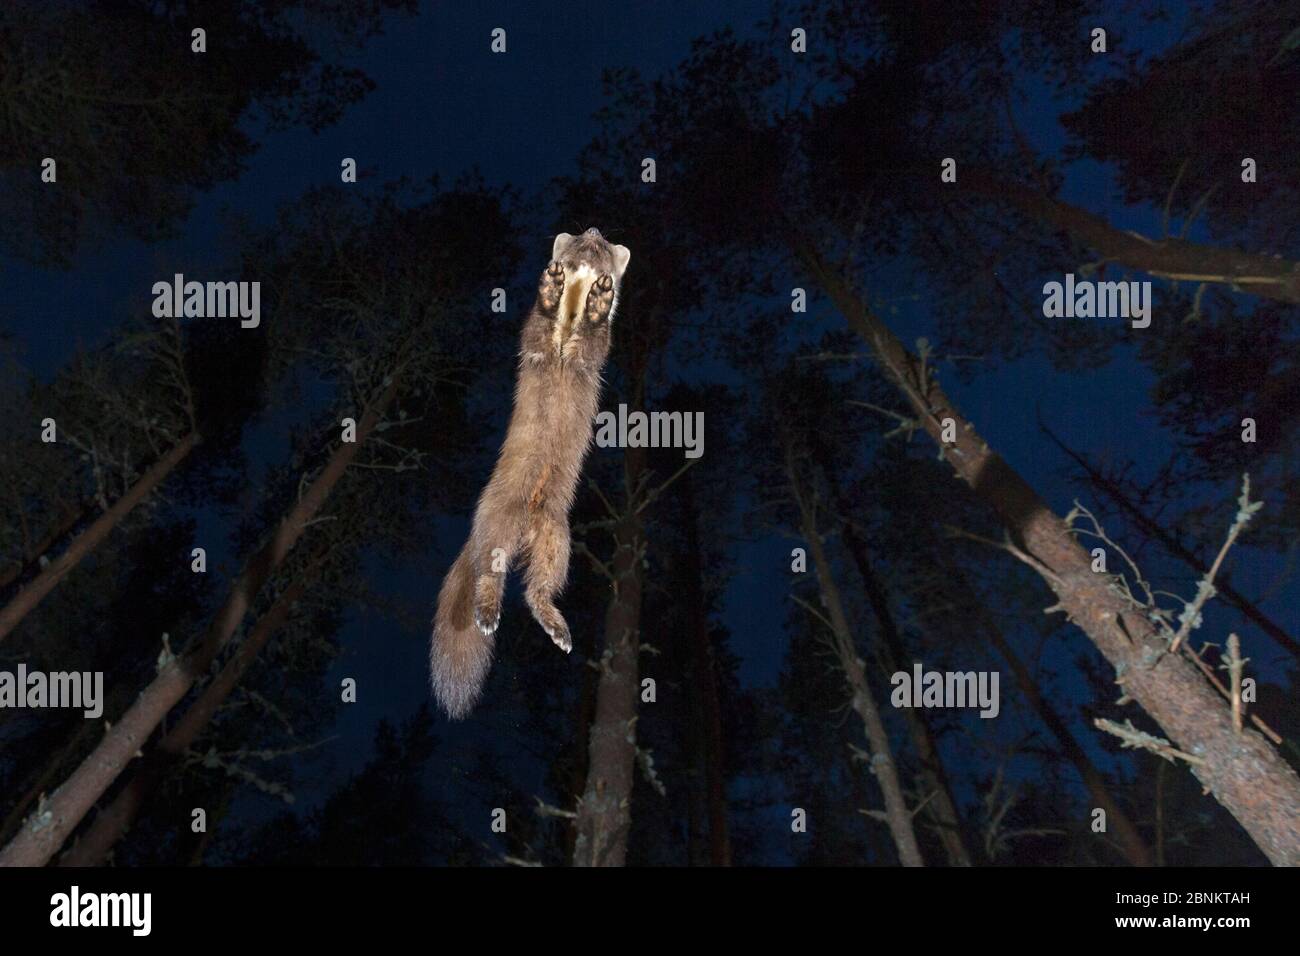 La martre de pin (Martes Martes) bondissant dans les bois de pin la nuit, Glenfeshie, parc national de Cairngorms, Écosse, Royaume-Uni, avril. Banque D'Images